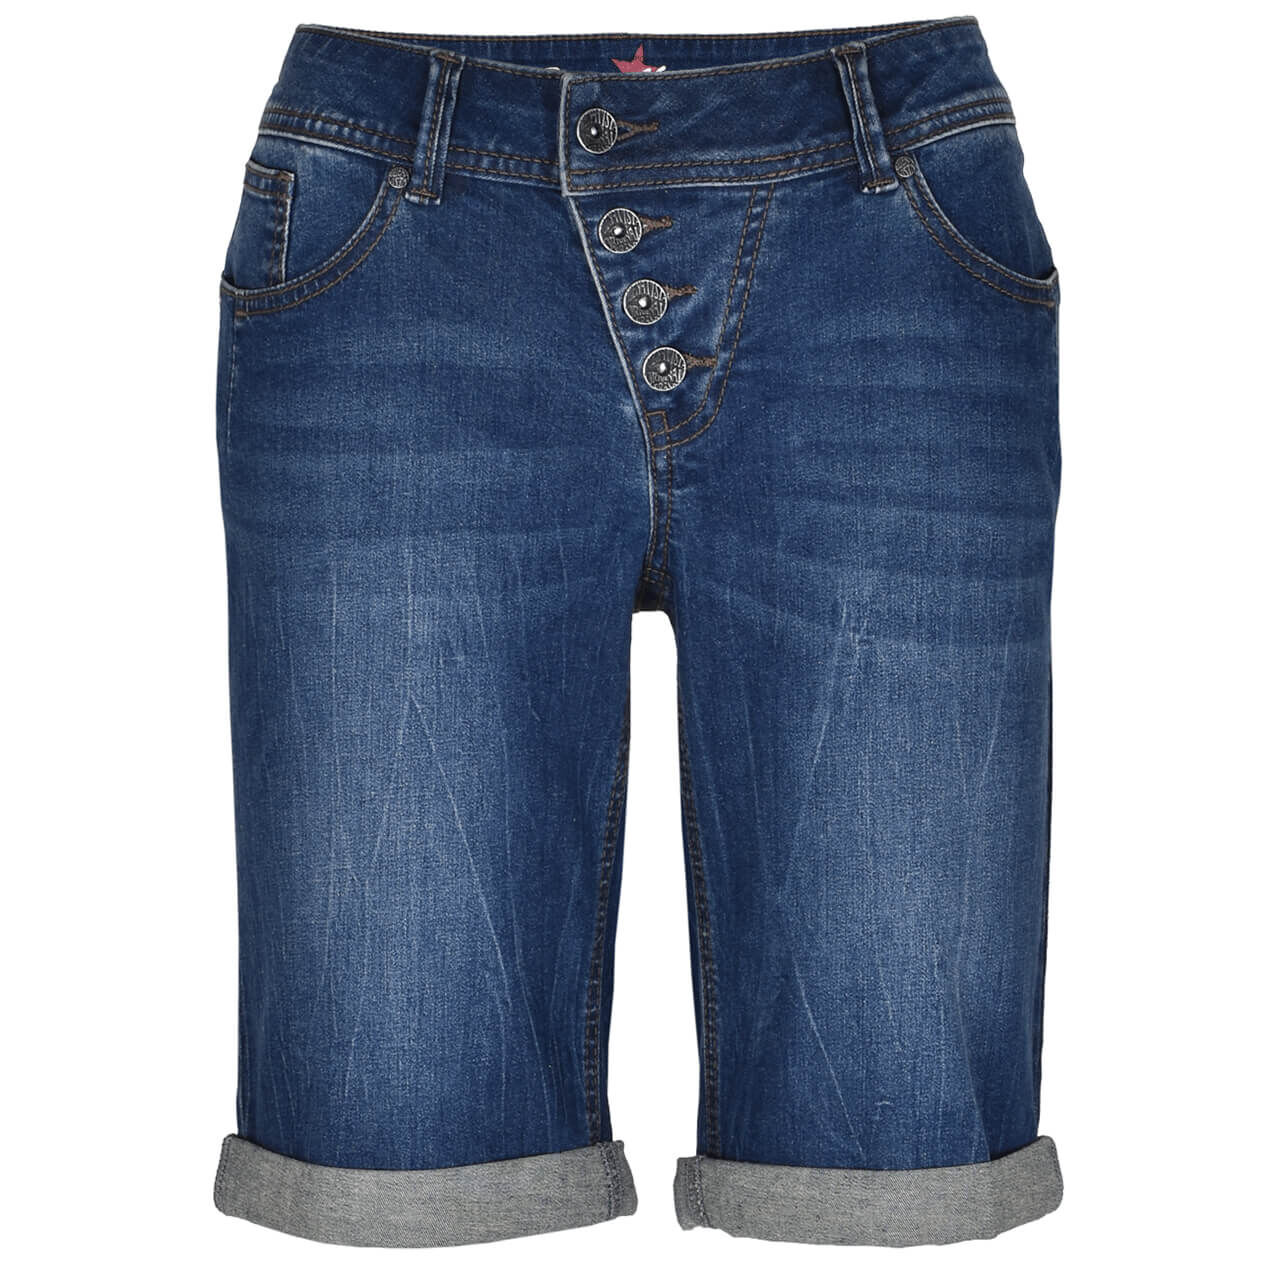 Buena Vista Jeans Malibu-Short Stretch Denim für Damen in Mittelblau angewaschen, FarbNr.: 4543